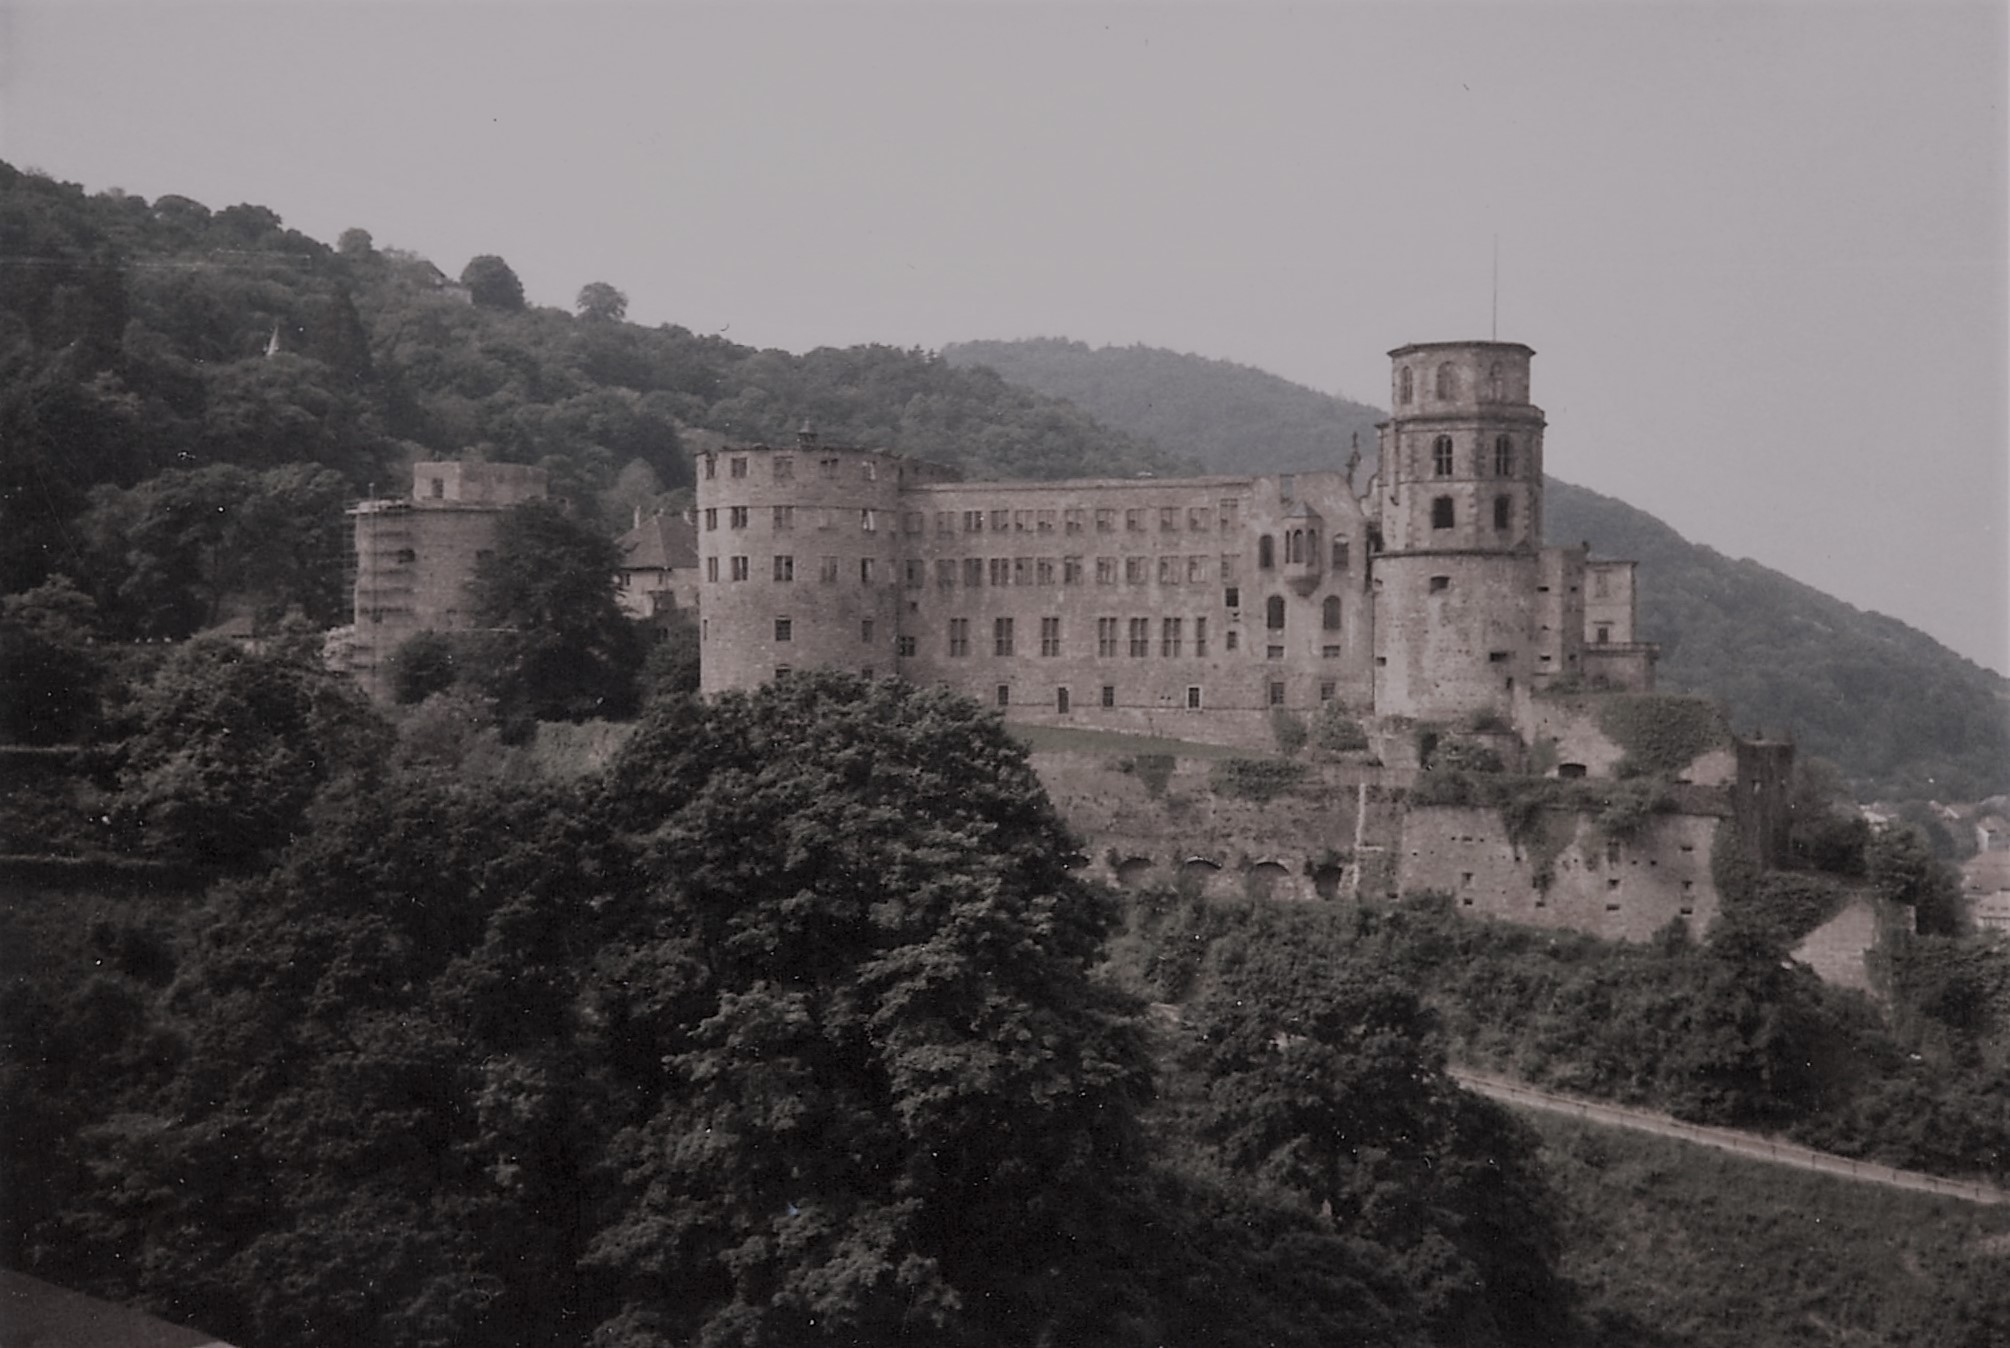 The famous Schloss Heidelberg